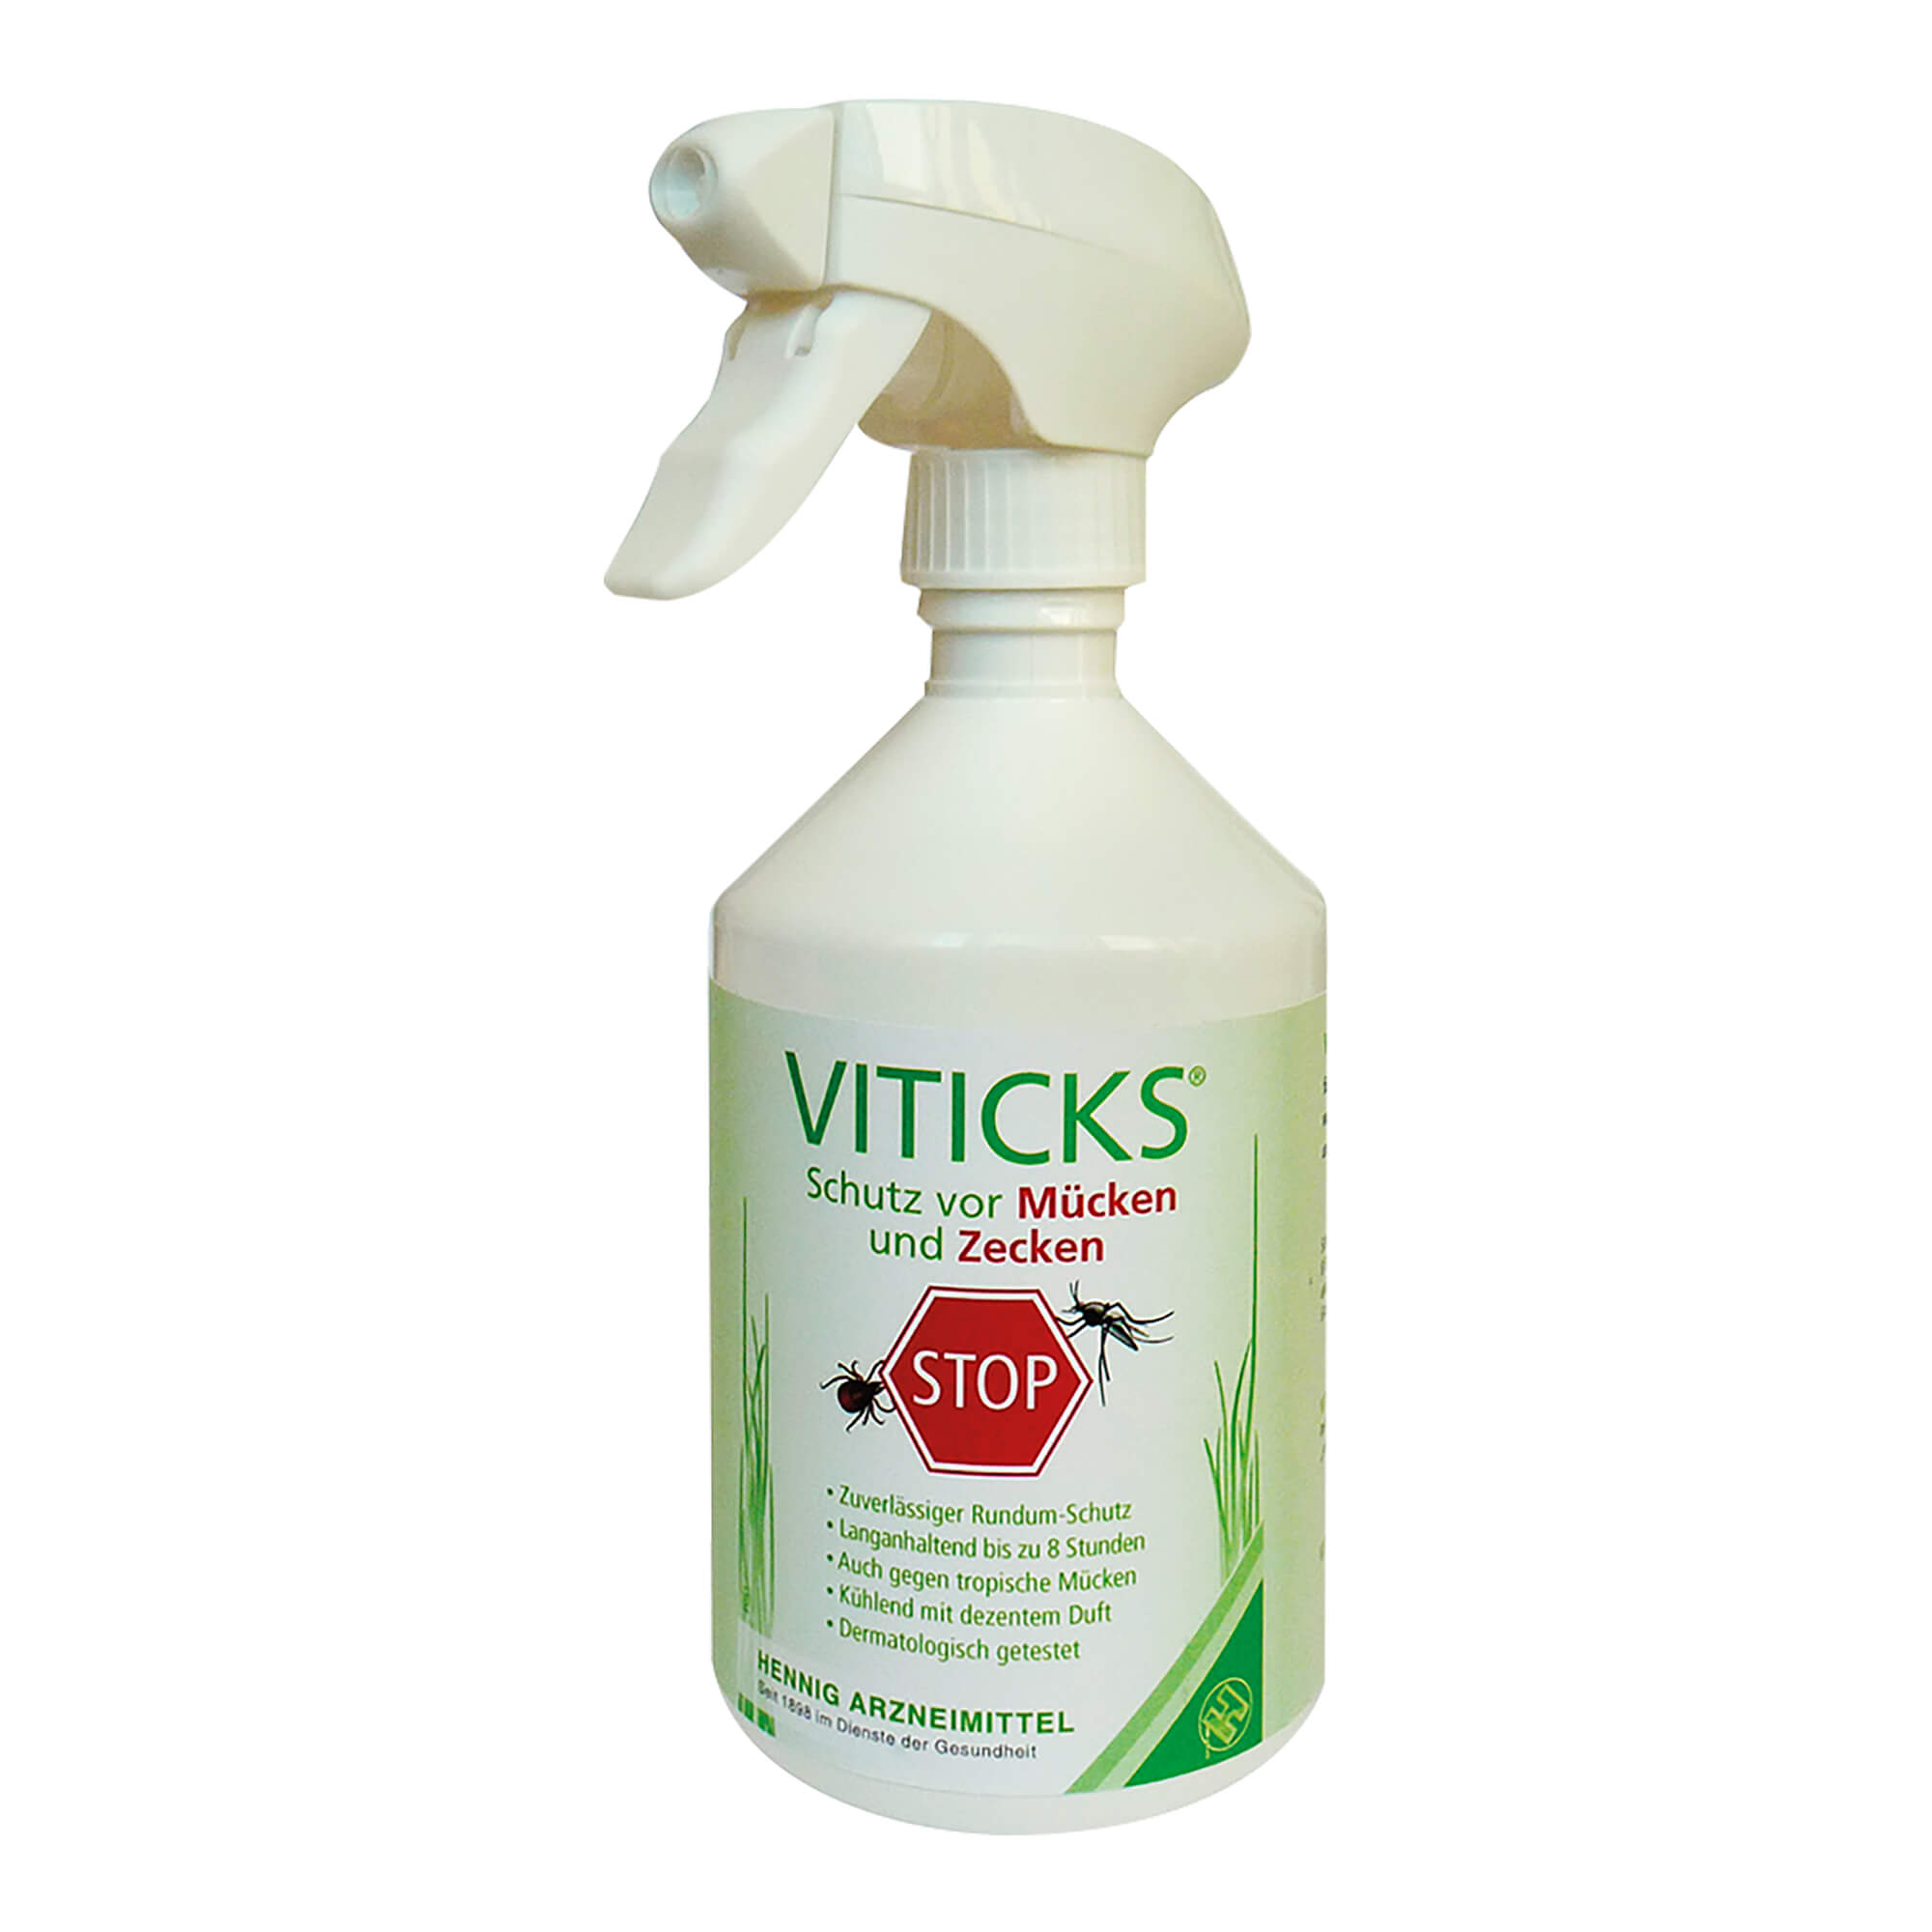 All-in-One Spray mit Icaridin für wirksamen und langanhaltenden Schutz vor Mücken und Zecken.